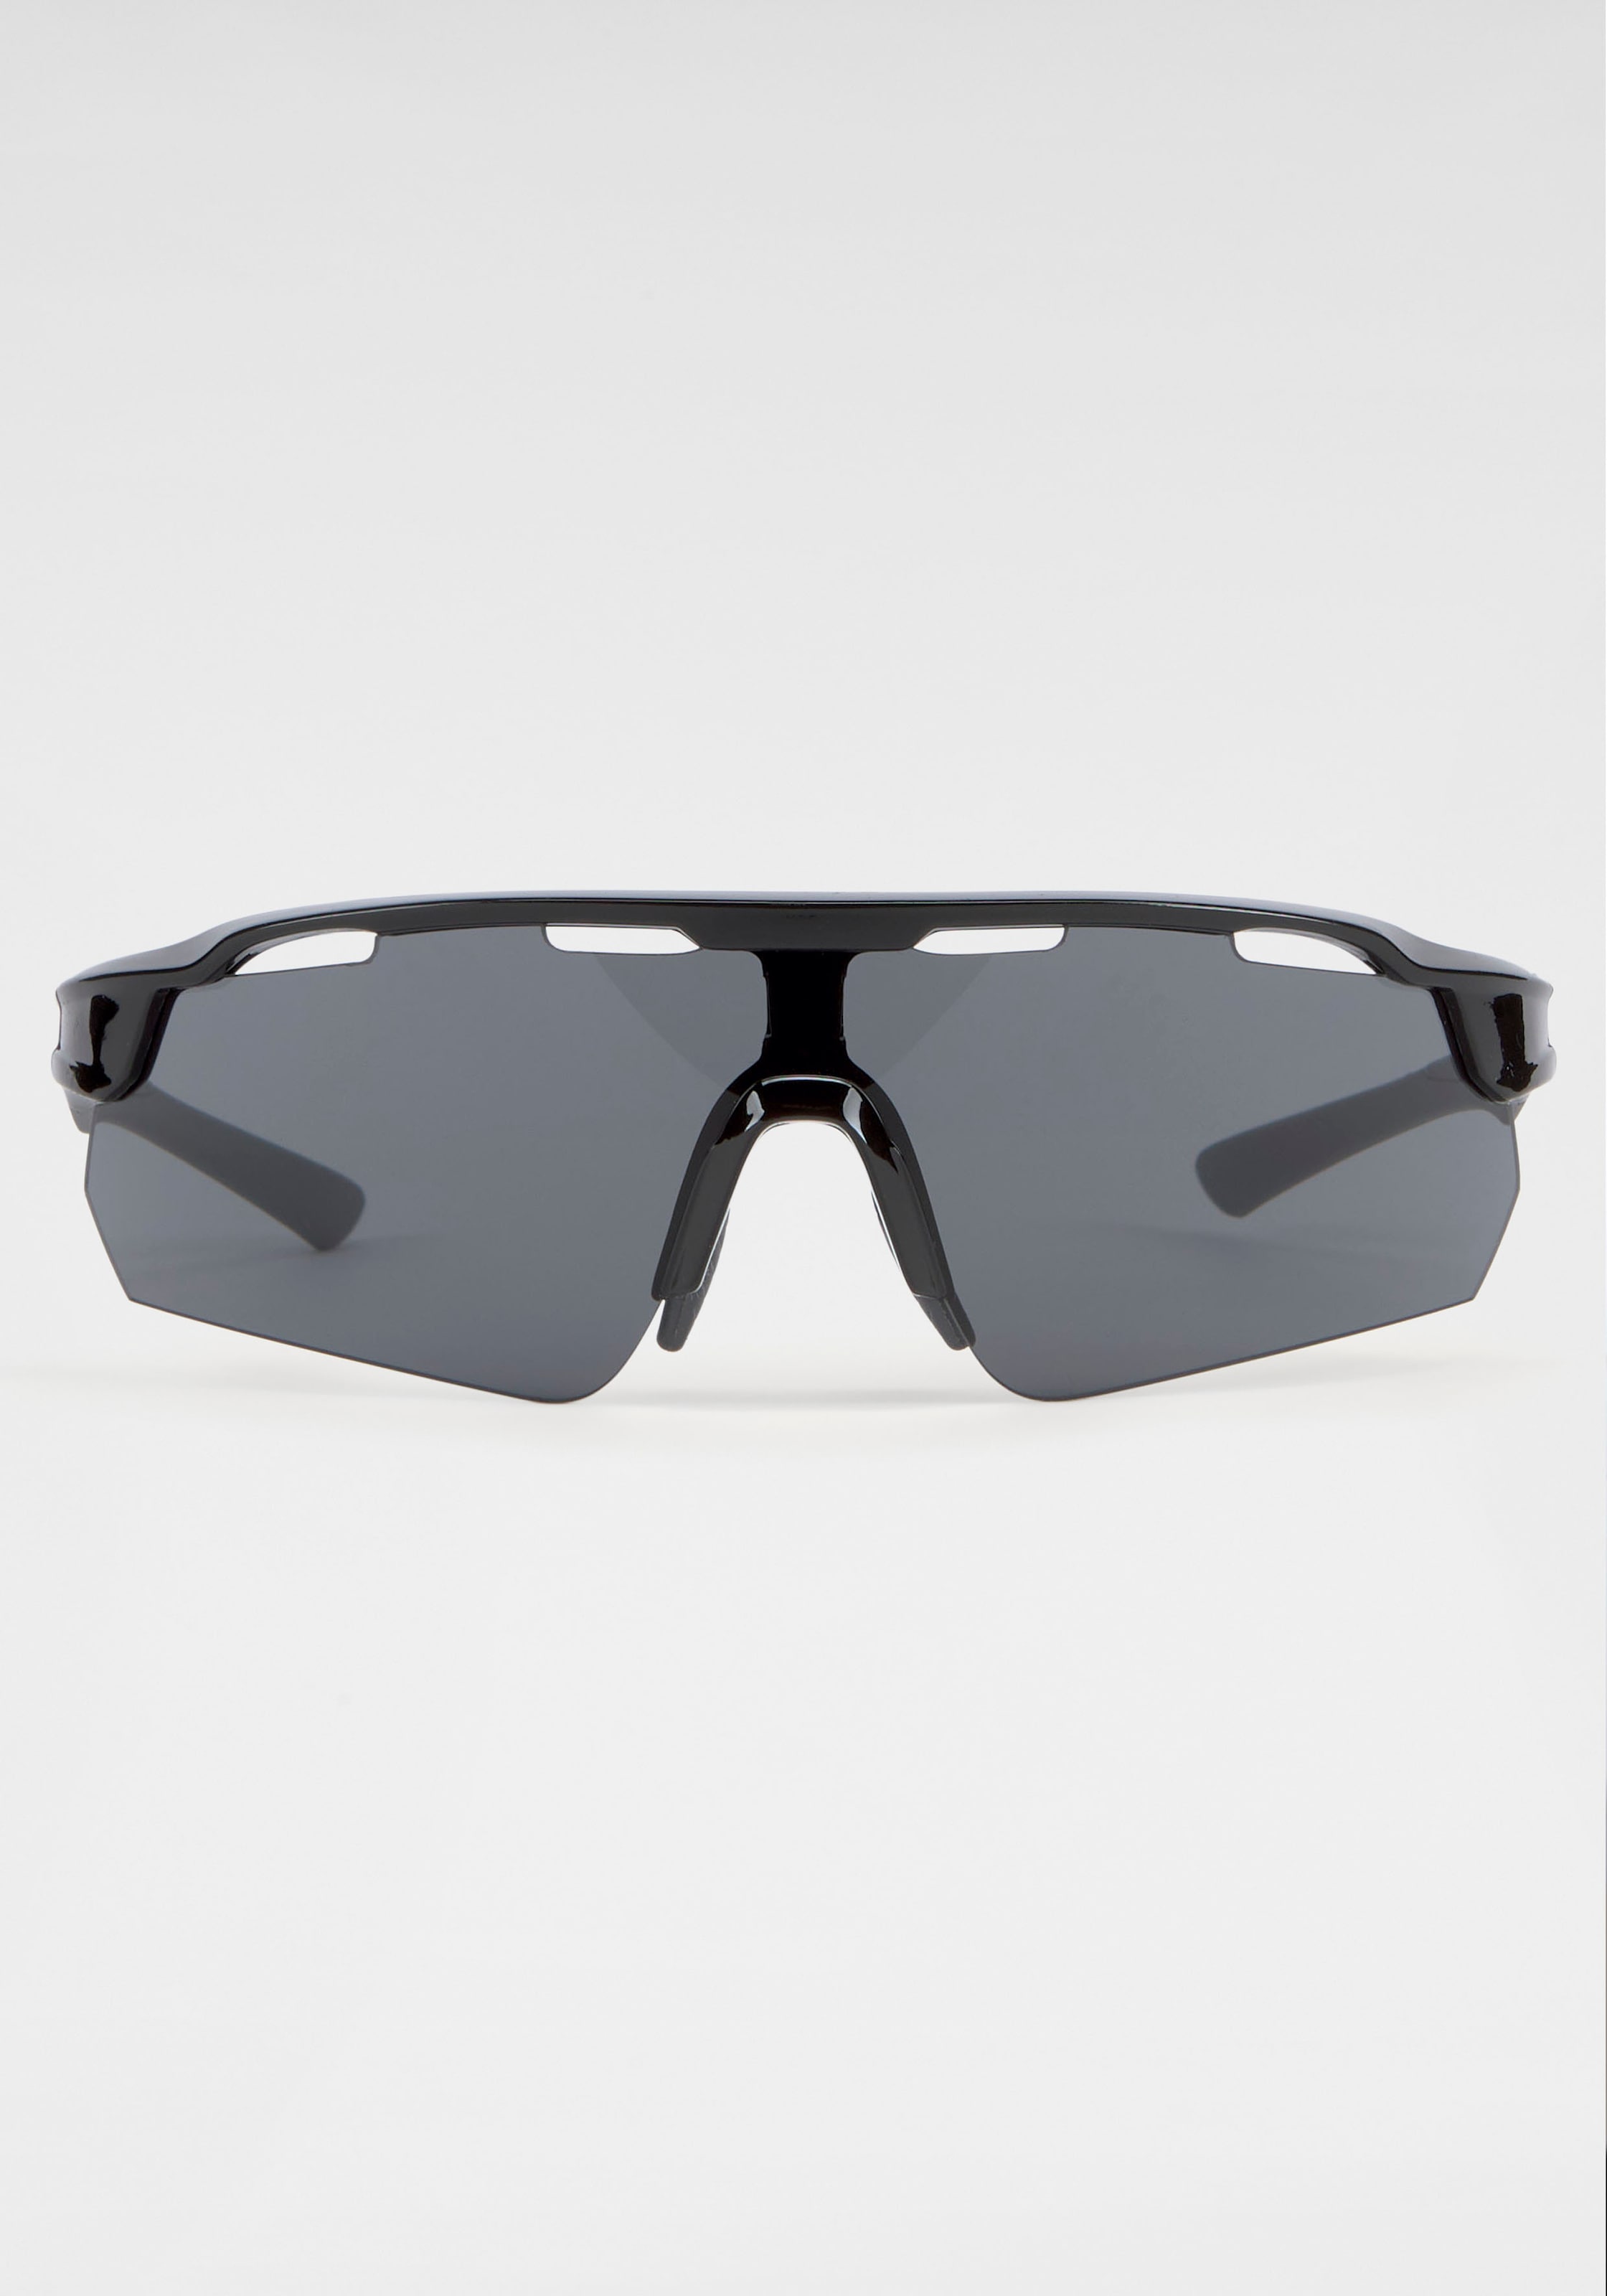 BACK IN BLACK Eyewear bestellen mit Gläsern gebogenen Sonnenbrille